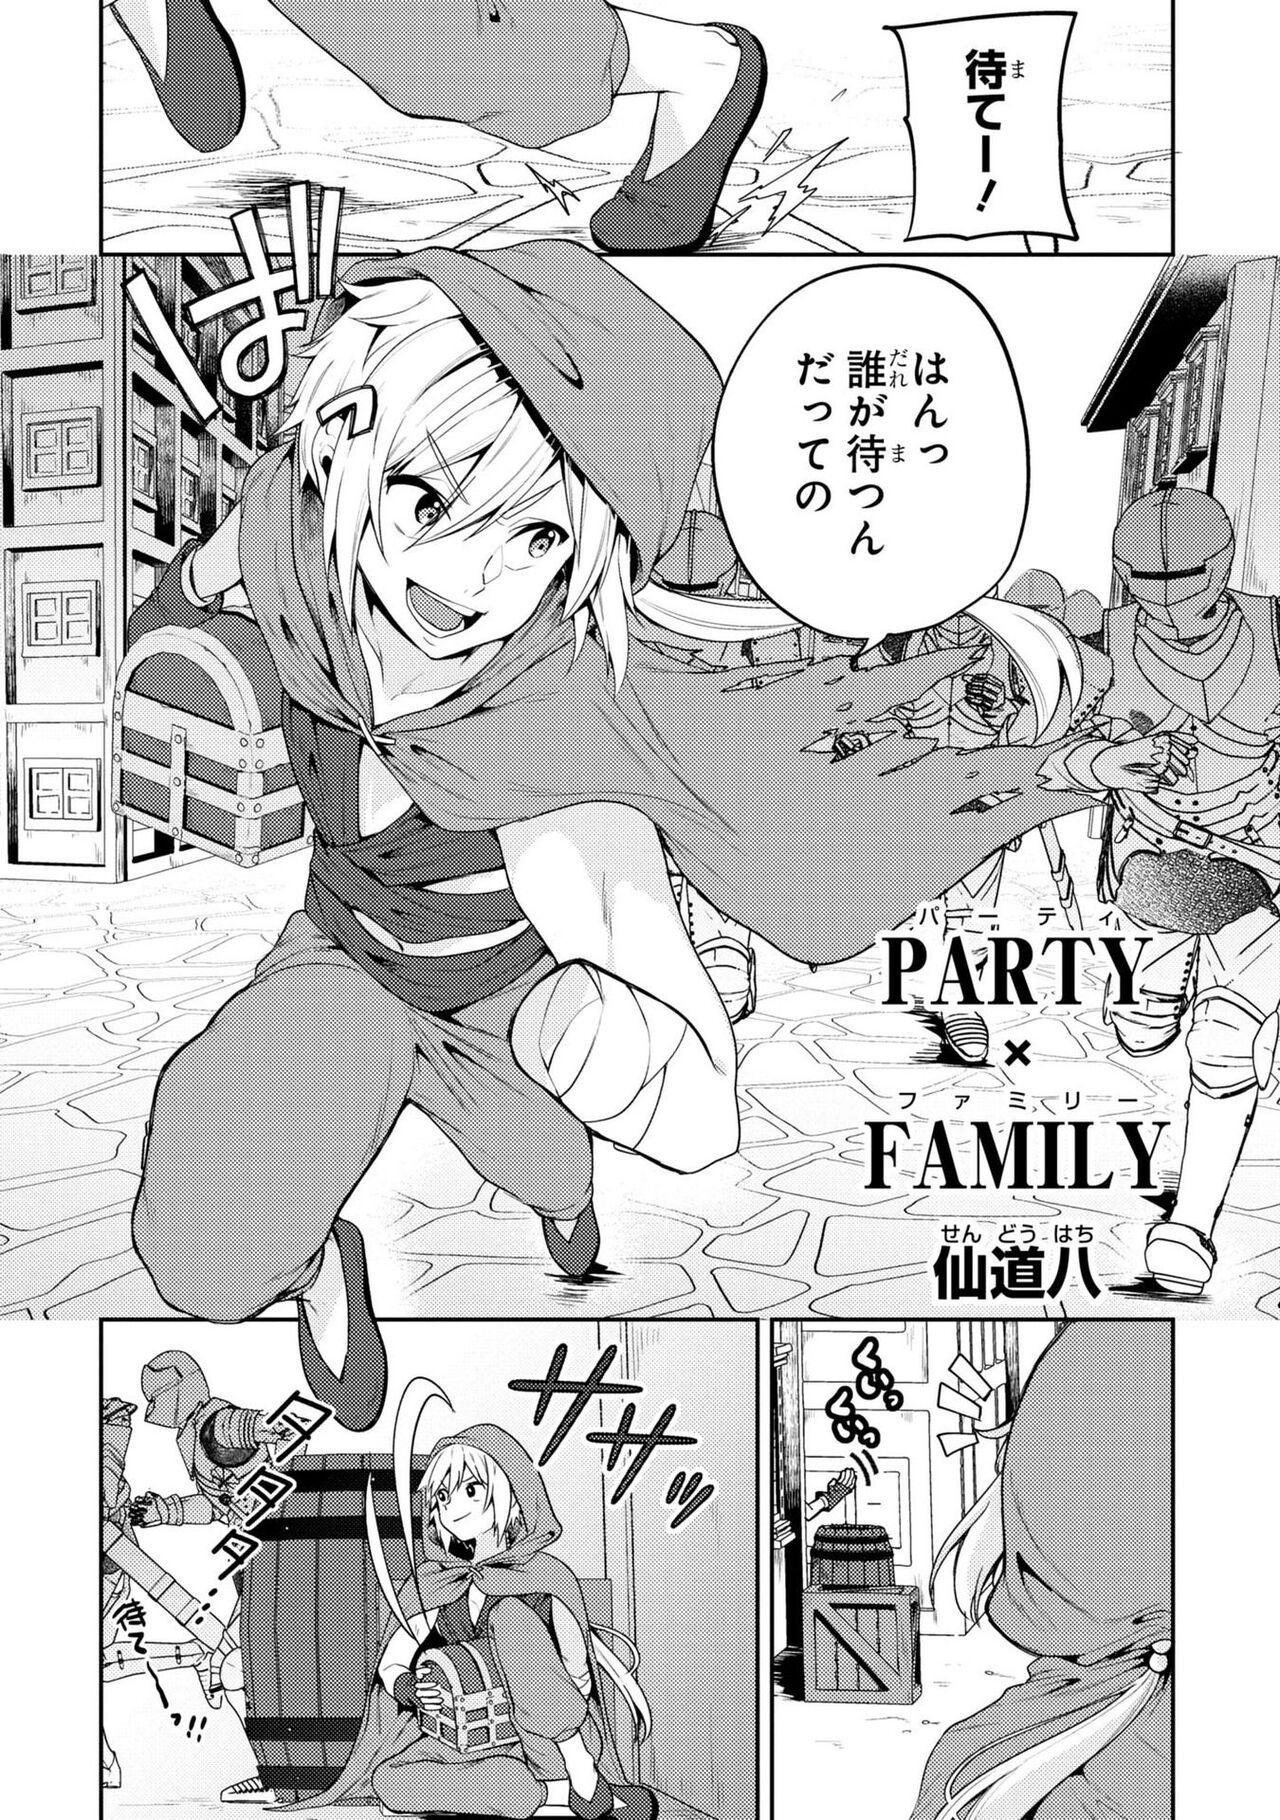 Party Tsuihou Sareta Ore ga Uragitta Nakama ni Fukushu Suru Anthology Comic 2 6